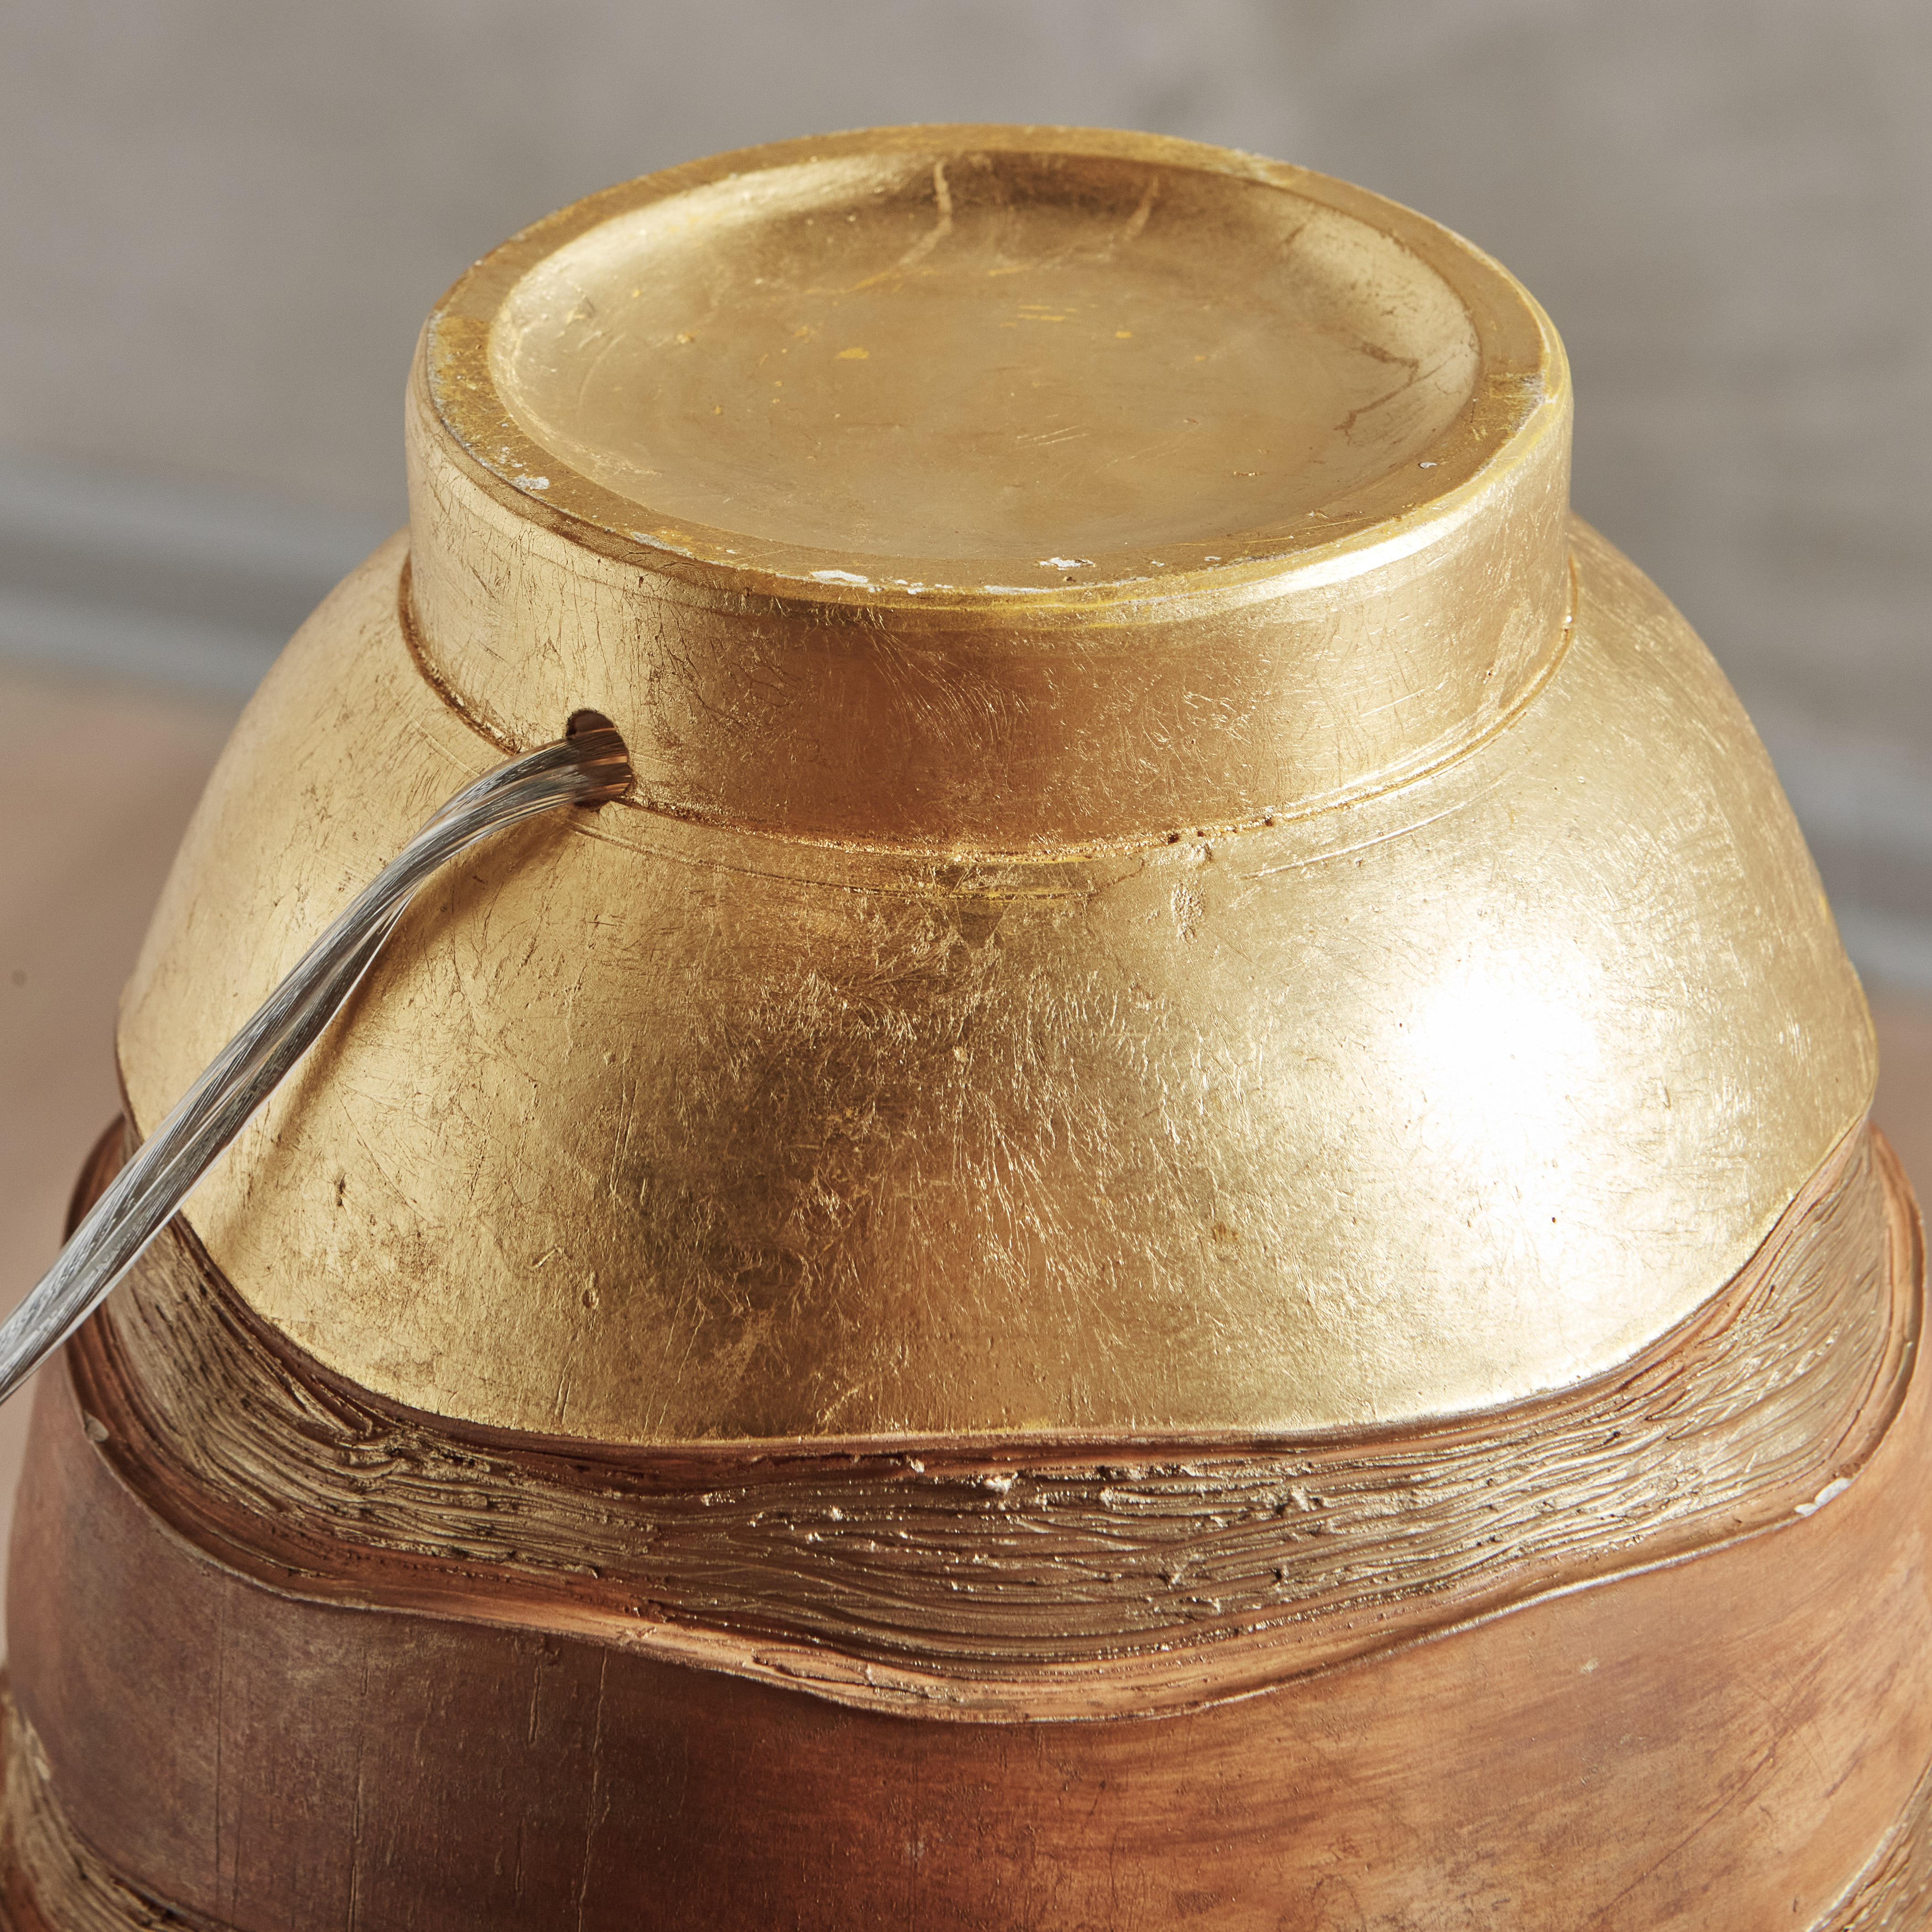 Lampe de table en céramique artisanale française des années 1970 qui semble avoir été jetée à la main sur un tour de potier. Cette lampe conique présente un motif de rayures ondulées gravé sur l'extérieur, dont la finition en feuille d'or appliquée